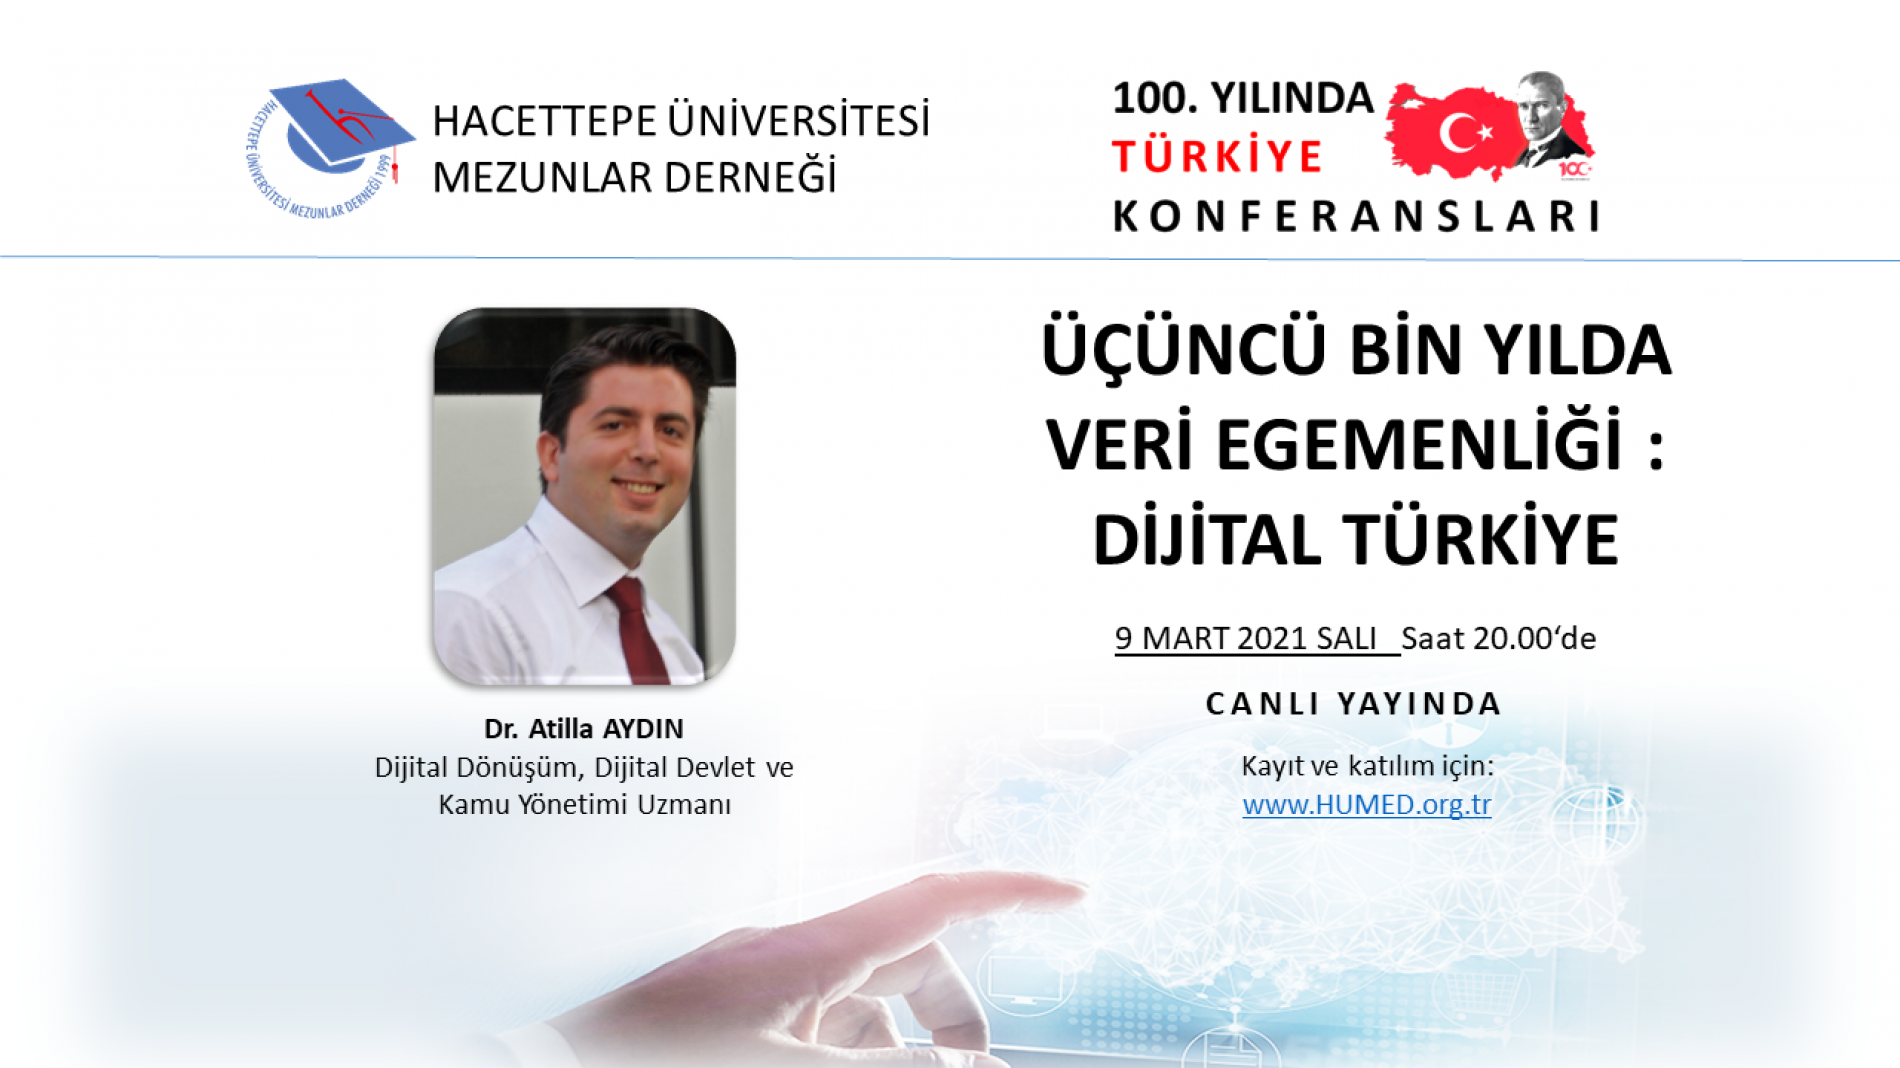 Üçüncü Bin Yılda Veri Egemenliği : Dijital Türkiye Konferansı